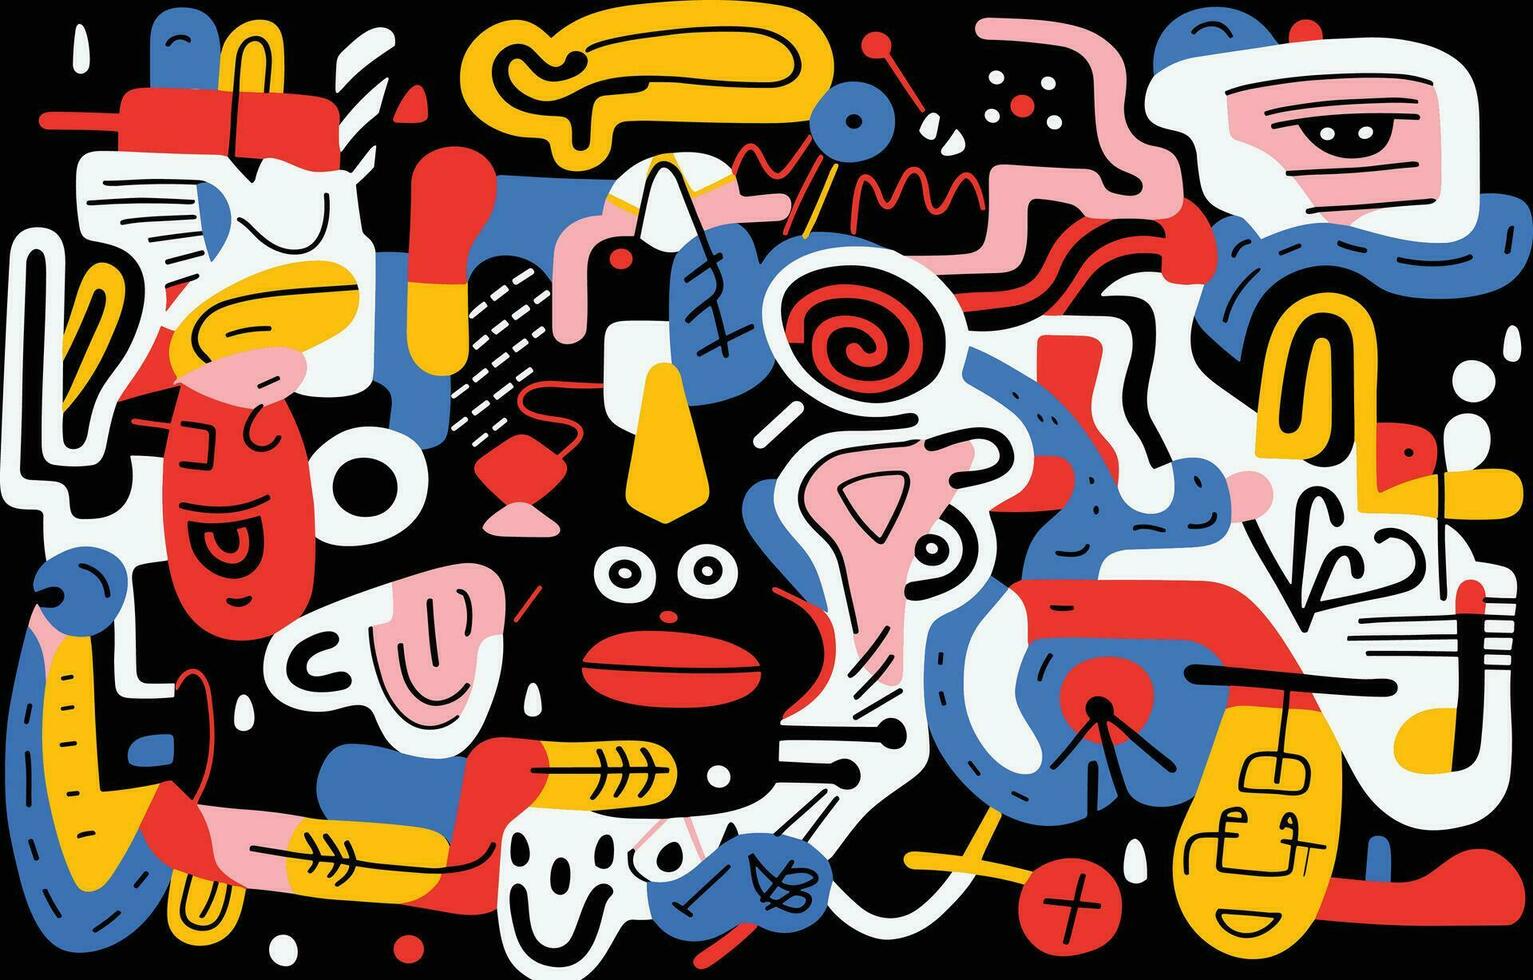 illustratie met divers kleurrijk voorwerpen van verschillend vormen, in de stijl van stoutmoedig abstract vormen, speels lijn tekeningen, kleurrijk geabstraheerd gezichten, figura serpentinata, abstract minimalisme vector